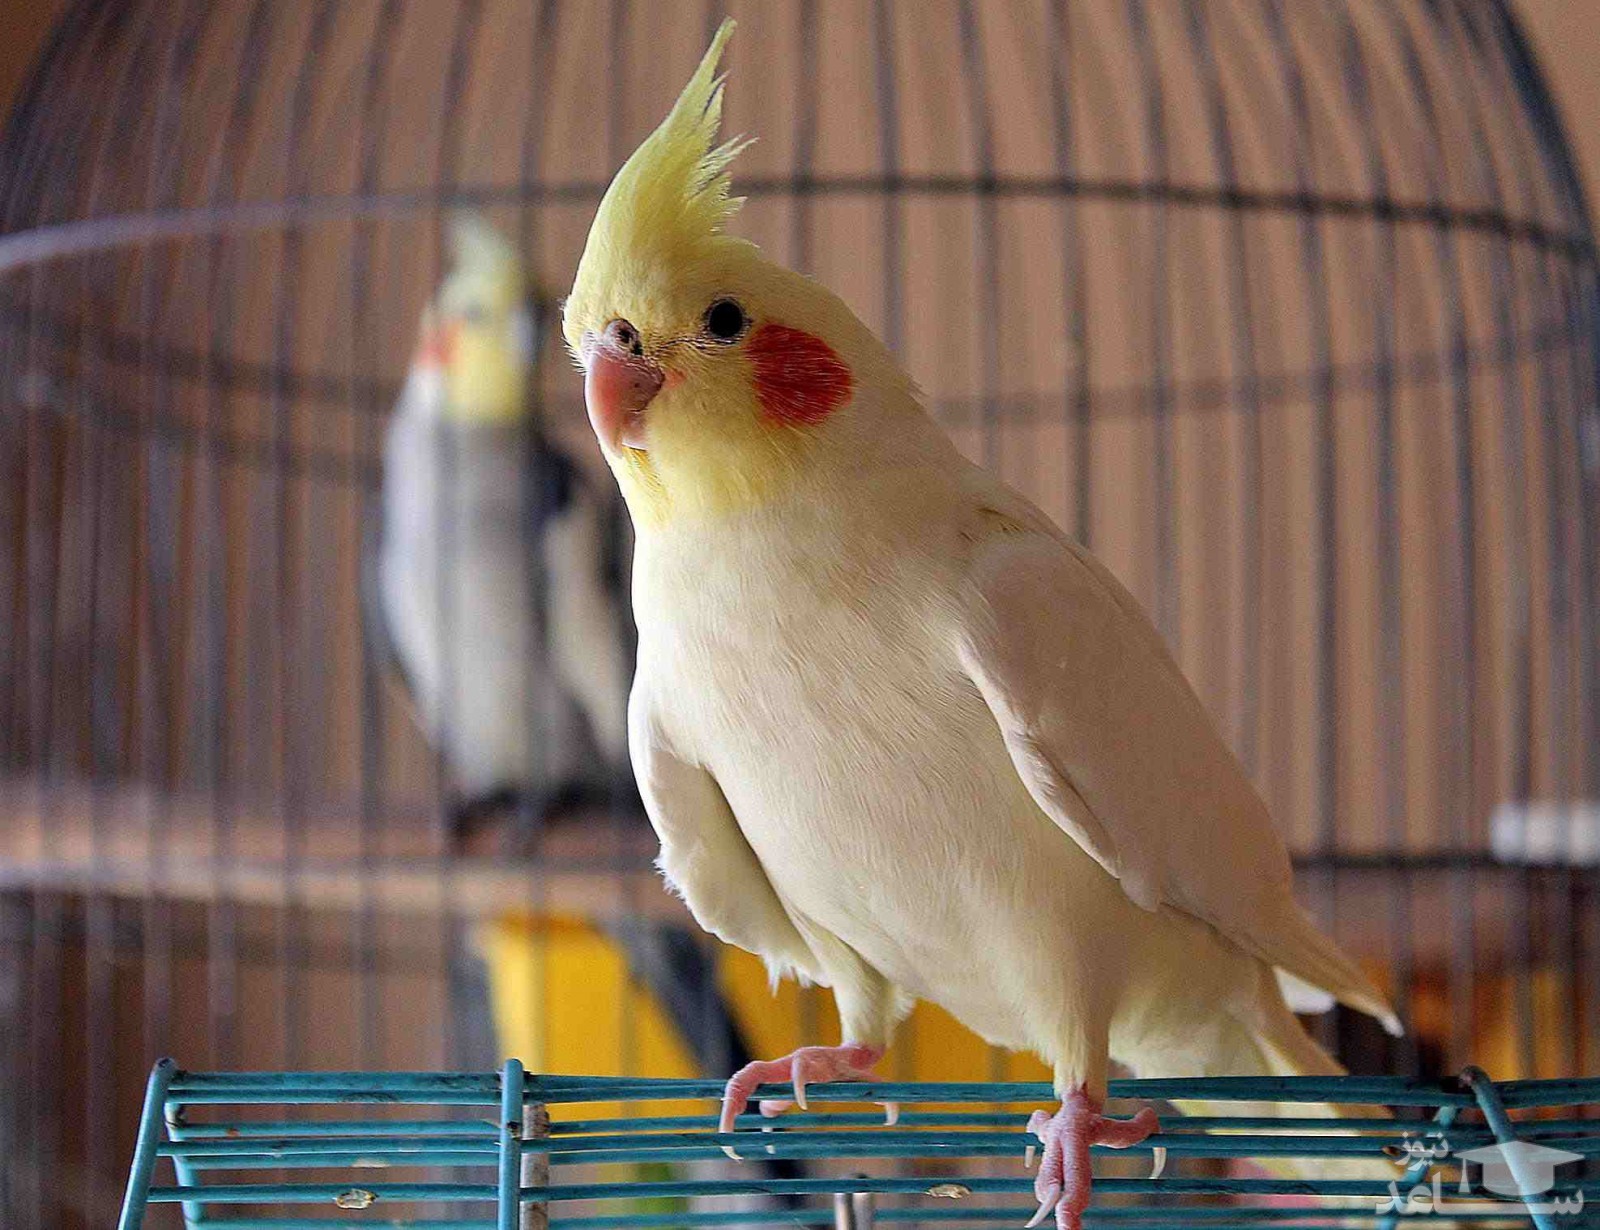 کدام مواد غذایی باعث مسموم شدن پرنده می شود؟